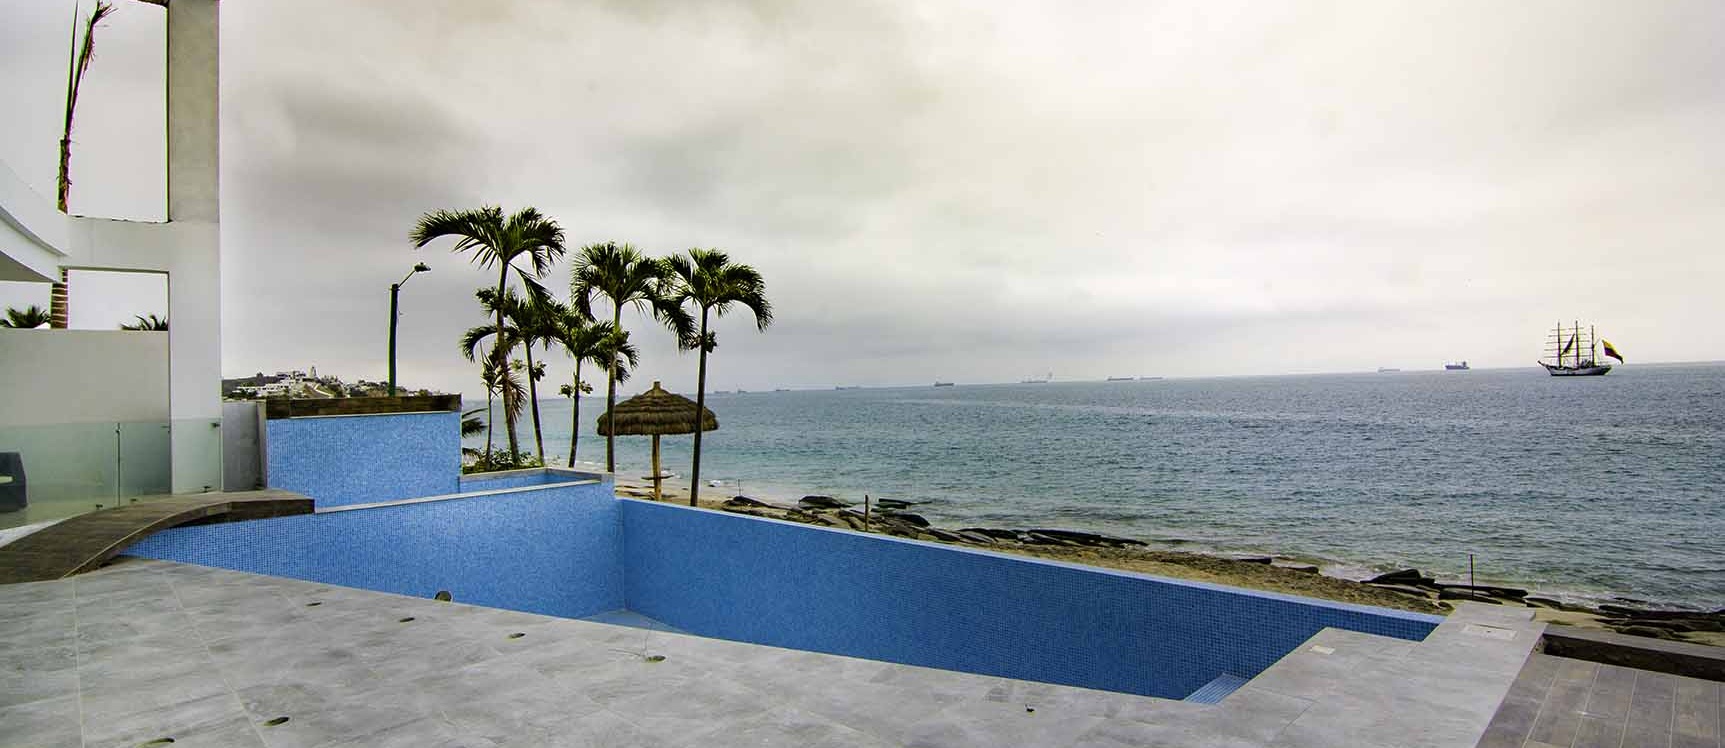 GeoBienes - Departamento en venta con vista al mar Condominio Nigon en Capaes - Santa Elena - Plusvalia Guayaquil Casas de venta y alquiler Inmobiliaria Ecuador